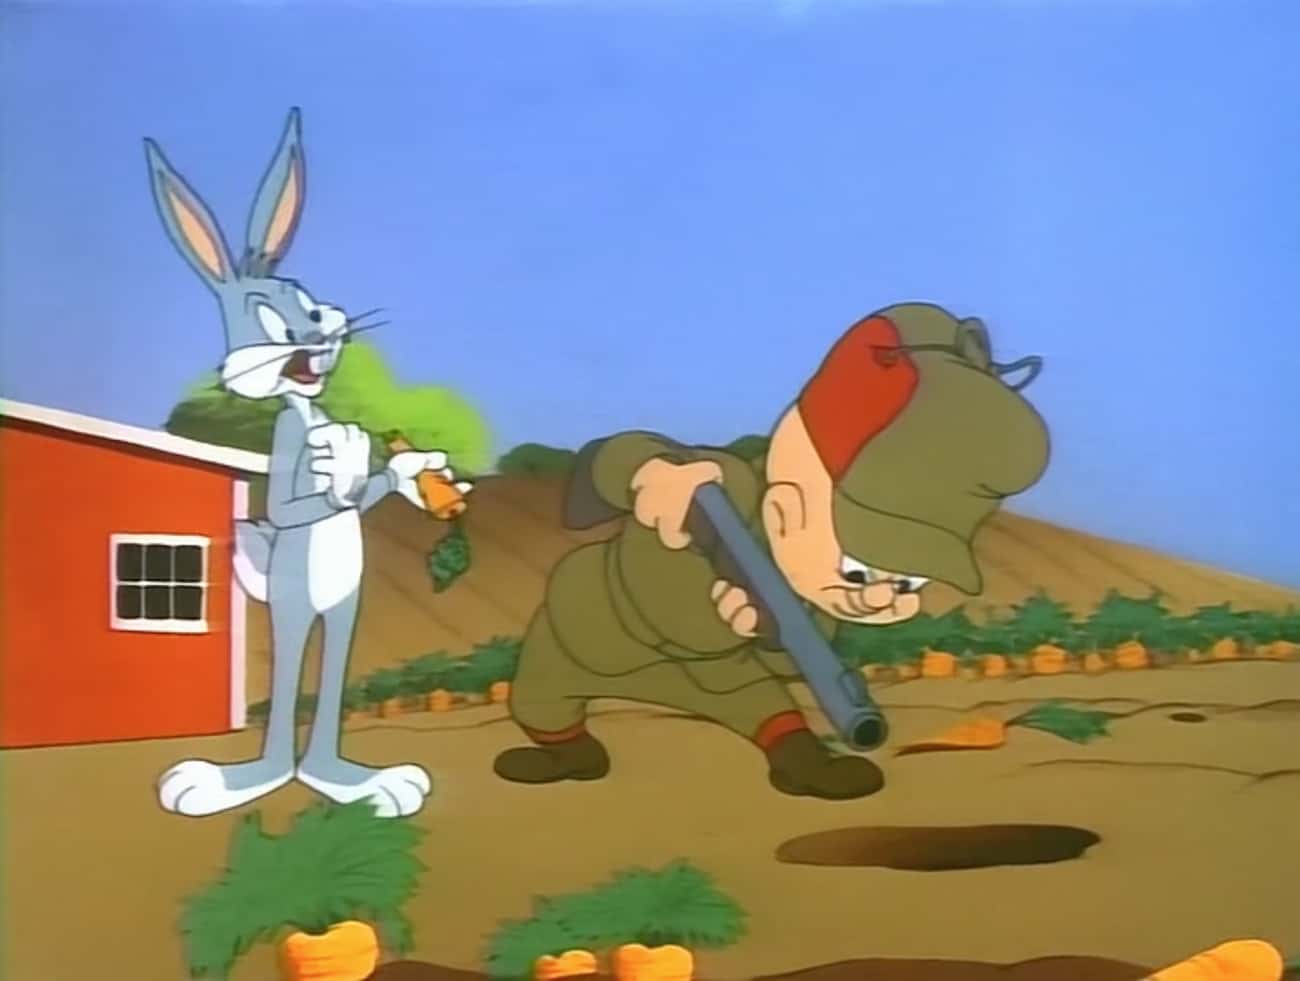 The Bugs Bunny Vs. Elmer Fudd Saga Is An Ongoing Story